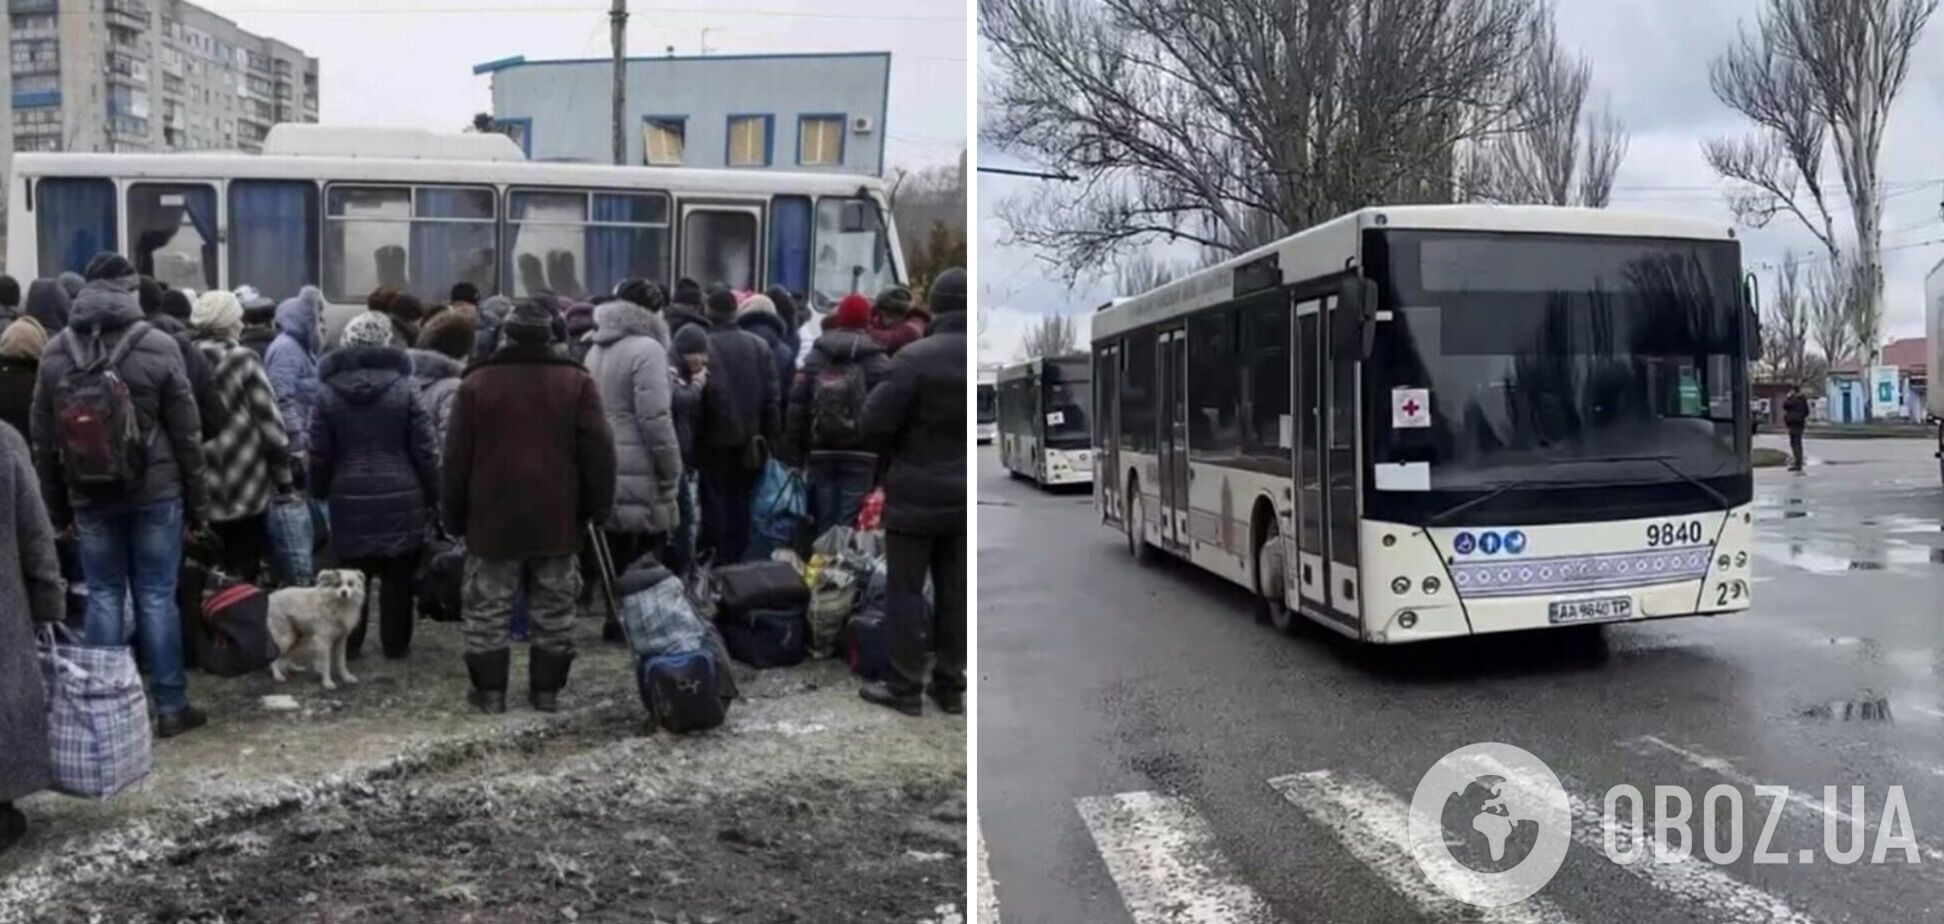 Вырвались из ада: 79 жителей Мариуполя смогли добраться в Запорожье. Видео